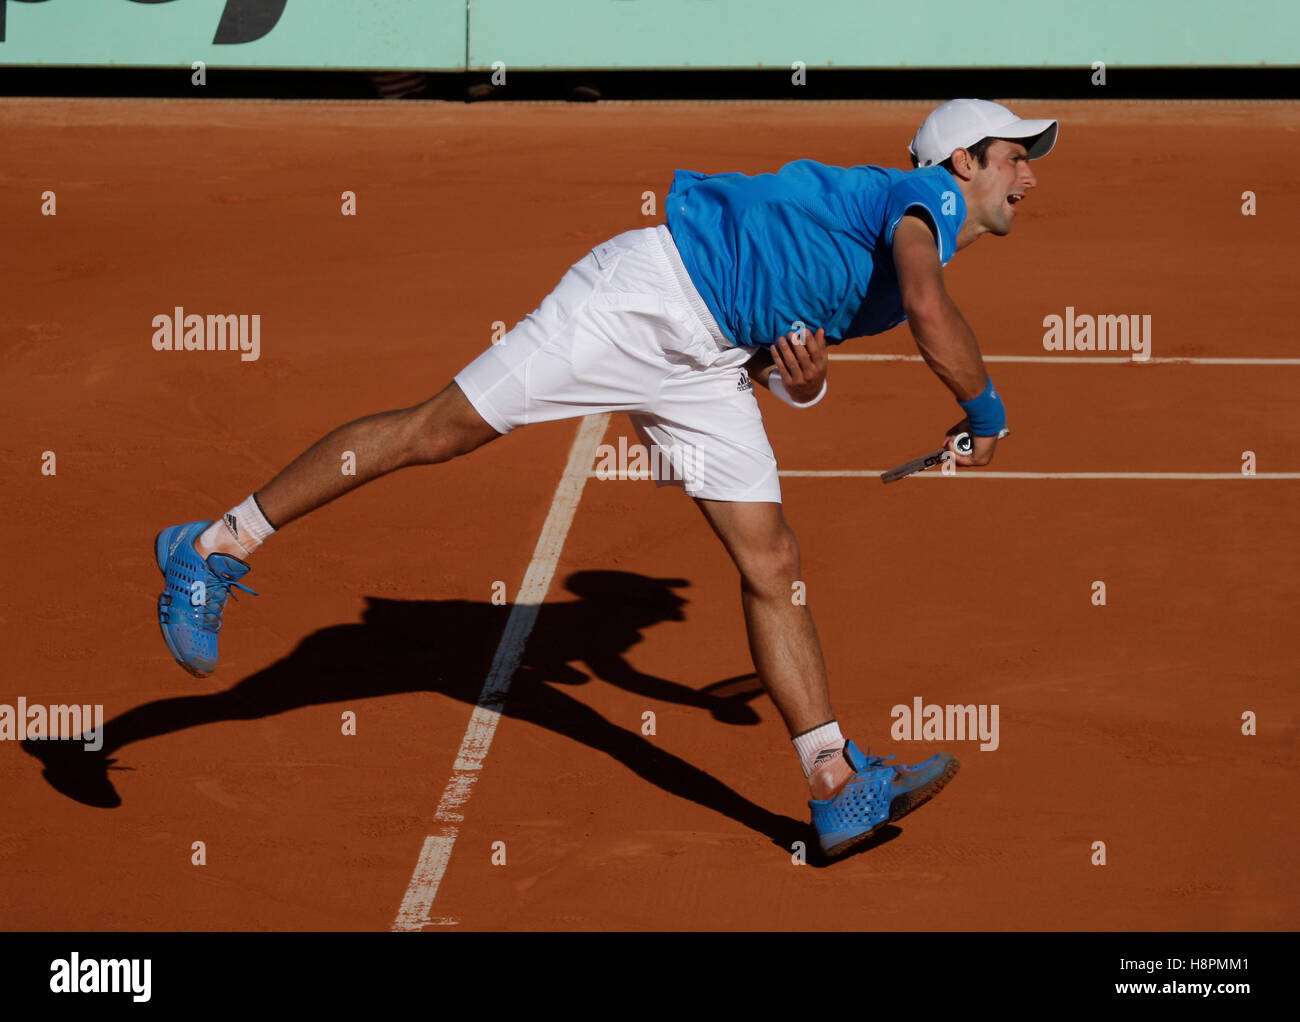 Novak Djokovic, Serbie, au service de l'ITF, tennis, tournoi du Grand Chelem, Roland-Garros 2009, Roland Garros, Paris, France, Europe Banque D'Images